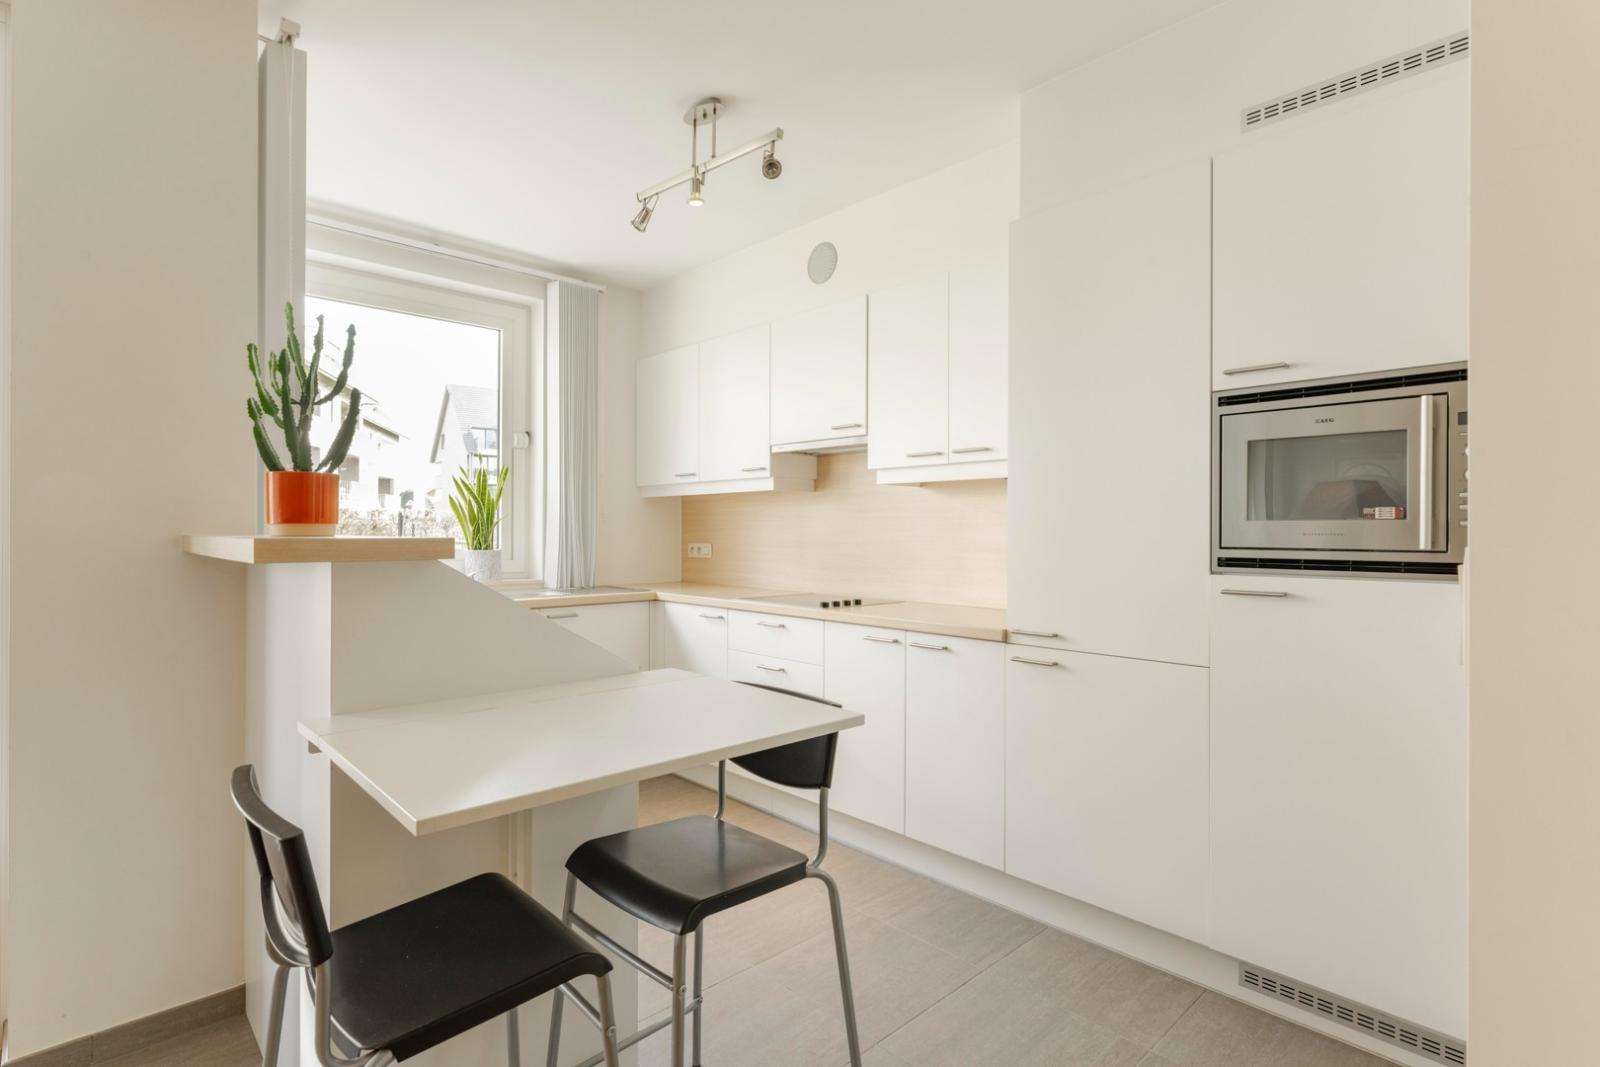 Recent gelijkvloers appartement met 2 slaapkamers vlakbij Centrum Tielt!